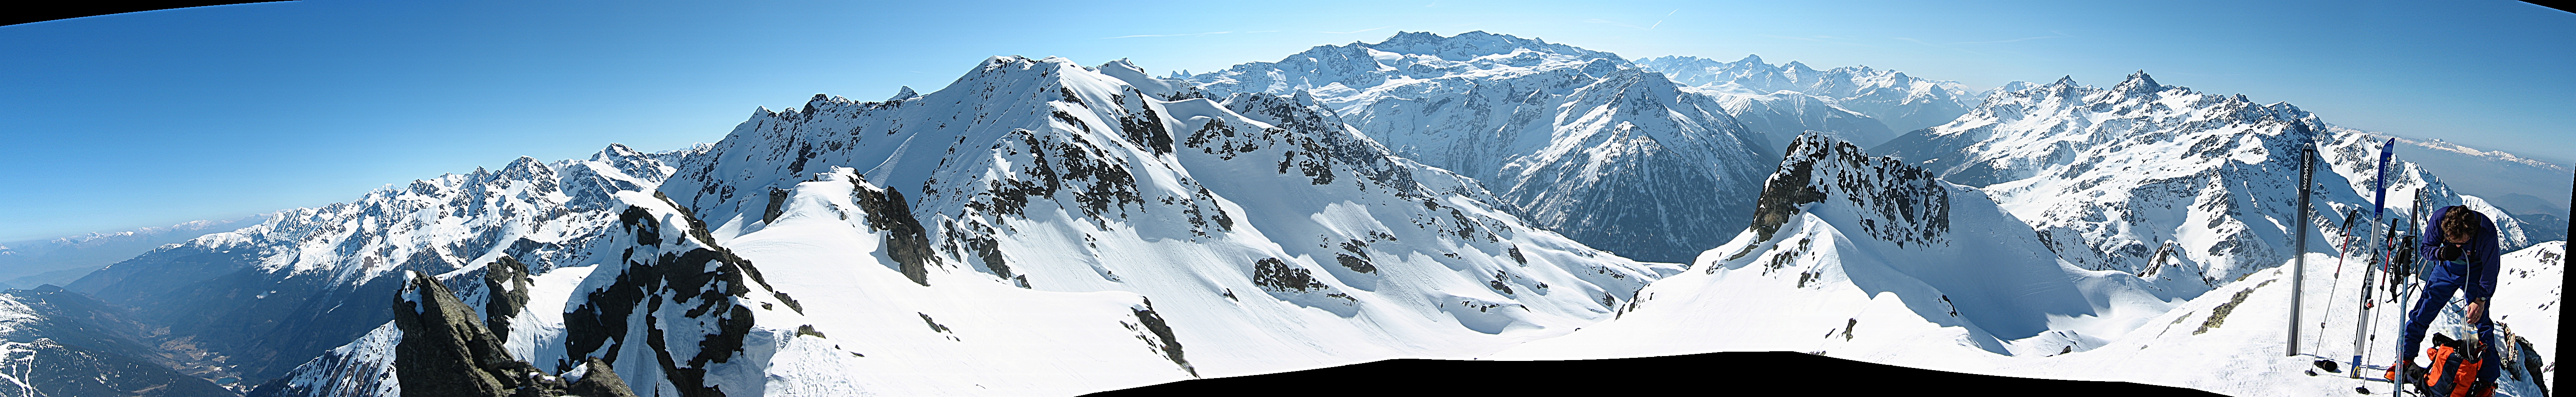 ... , le 19 mars 2003, panoramique grand format 4.2MB (Retour Alpes